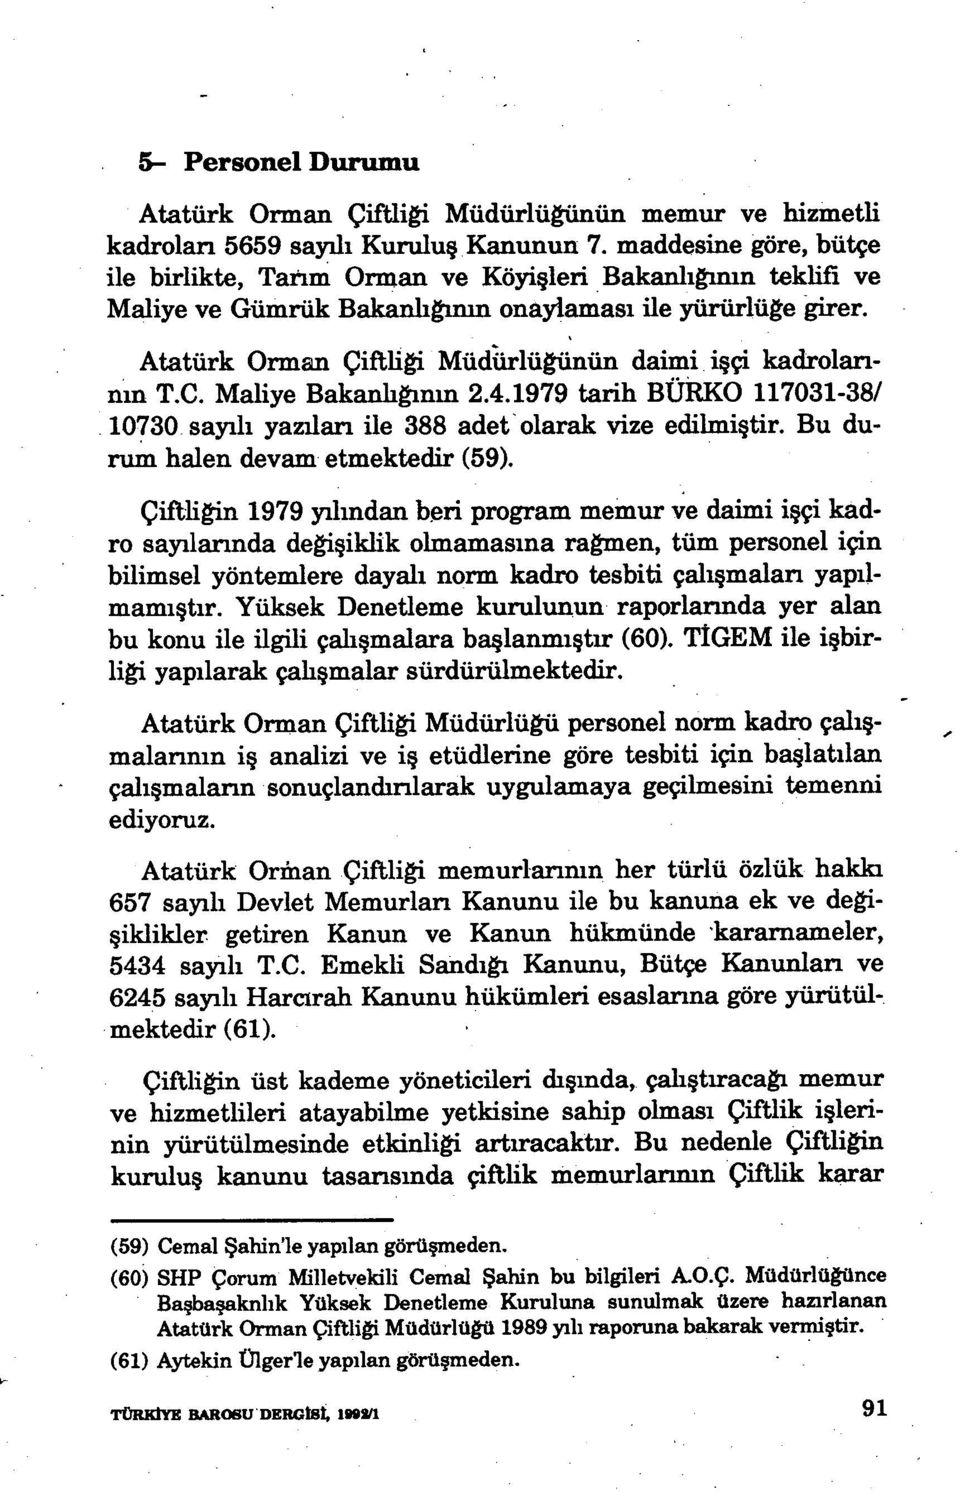 Atatürk Orman Çiftli ği Müdürlüğünün daimi işçi kadrolarının T.C. Maliye Bakanlığınm 2.4.1979 tarih BURKO 117031-38/ 10730. sayılı yazıları ile 388 adet olarak vize edilmi ştir.